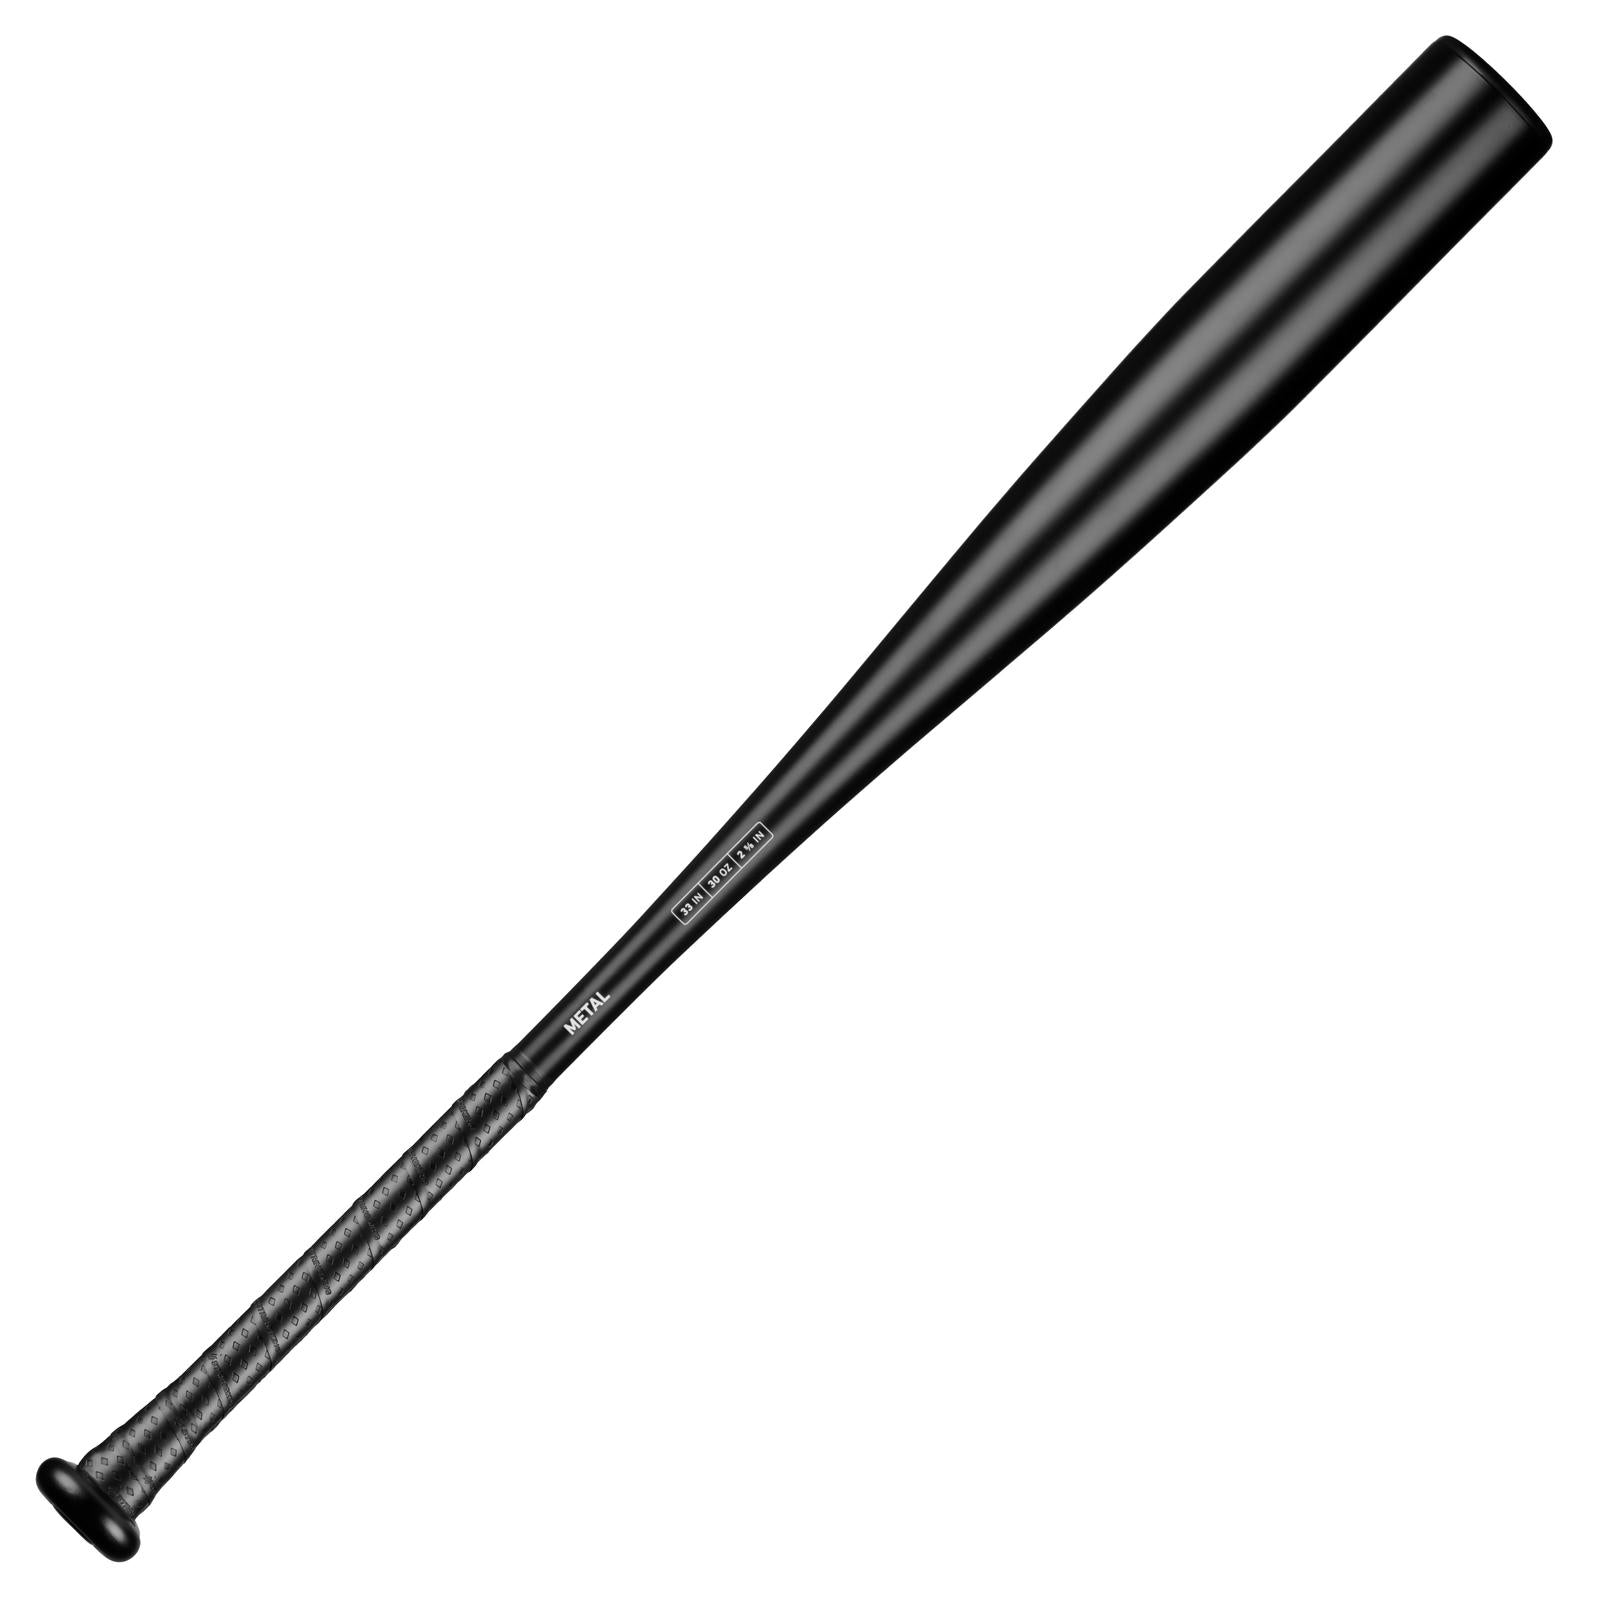 StrikeKing Metal BBCOR Baseball Bat